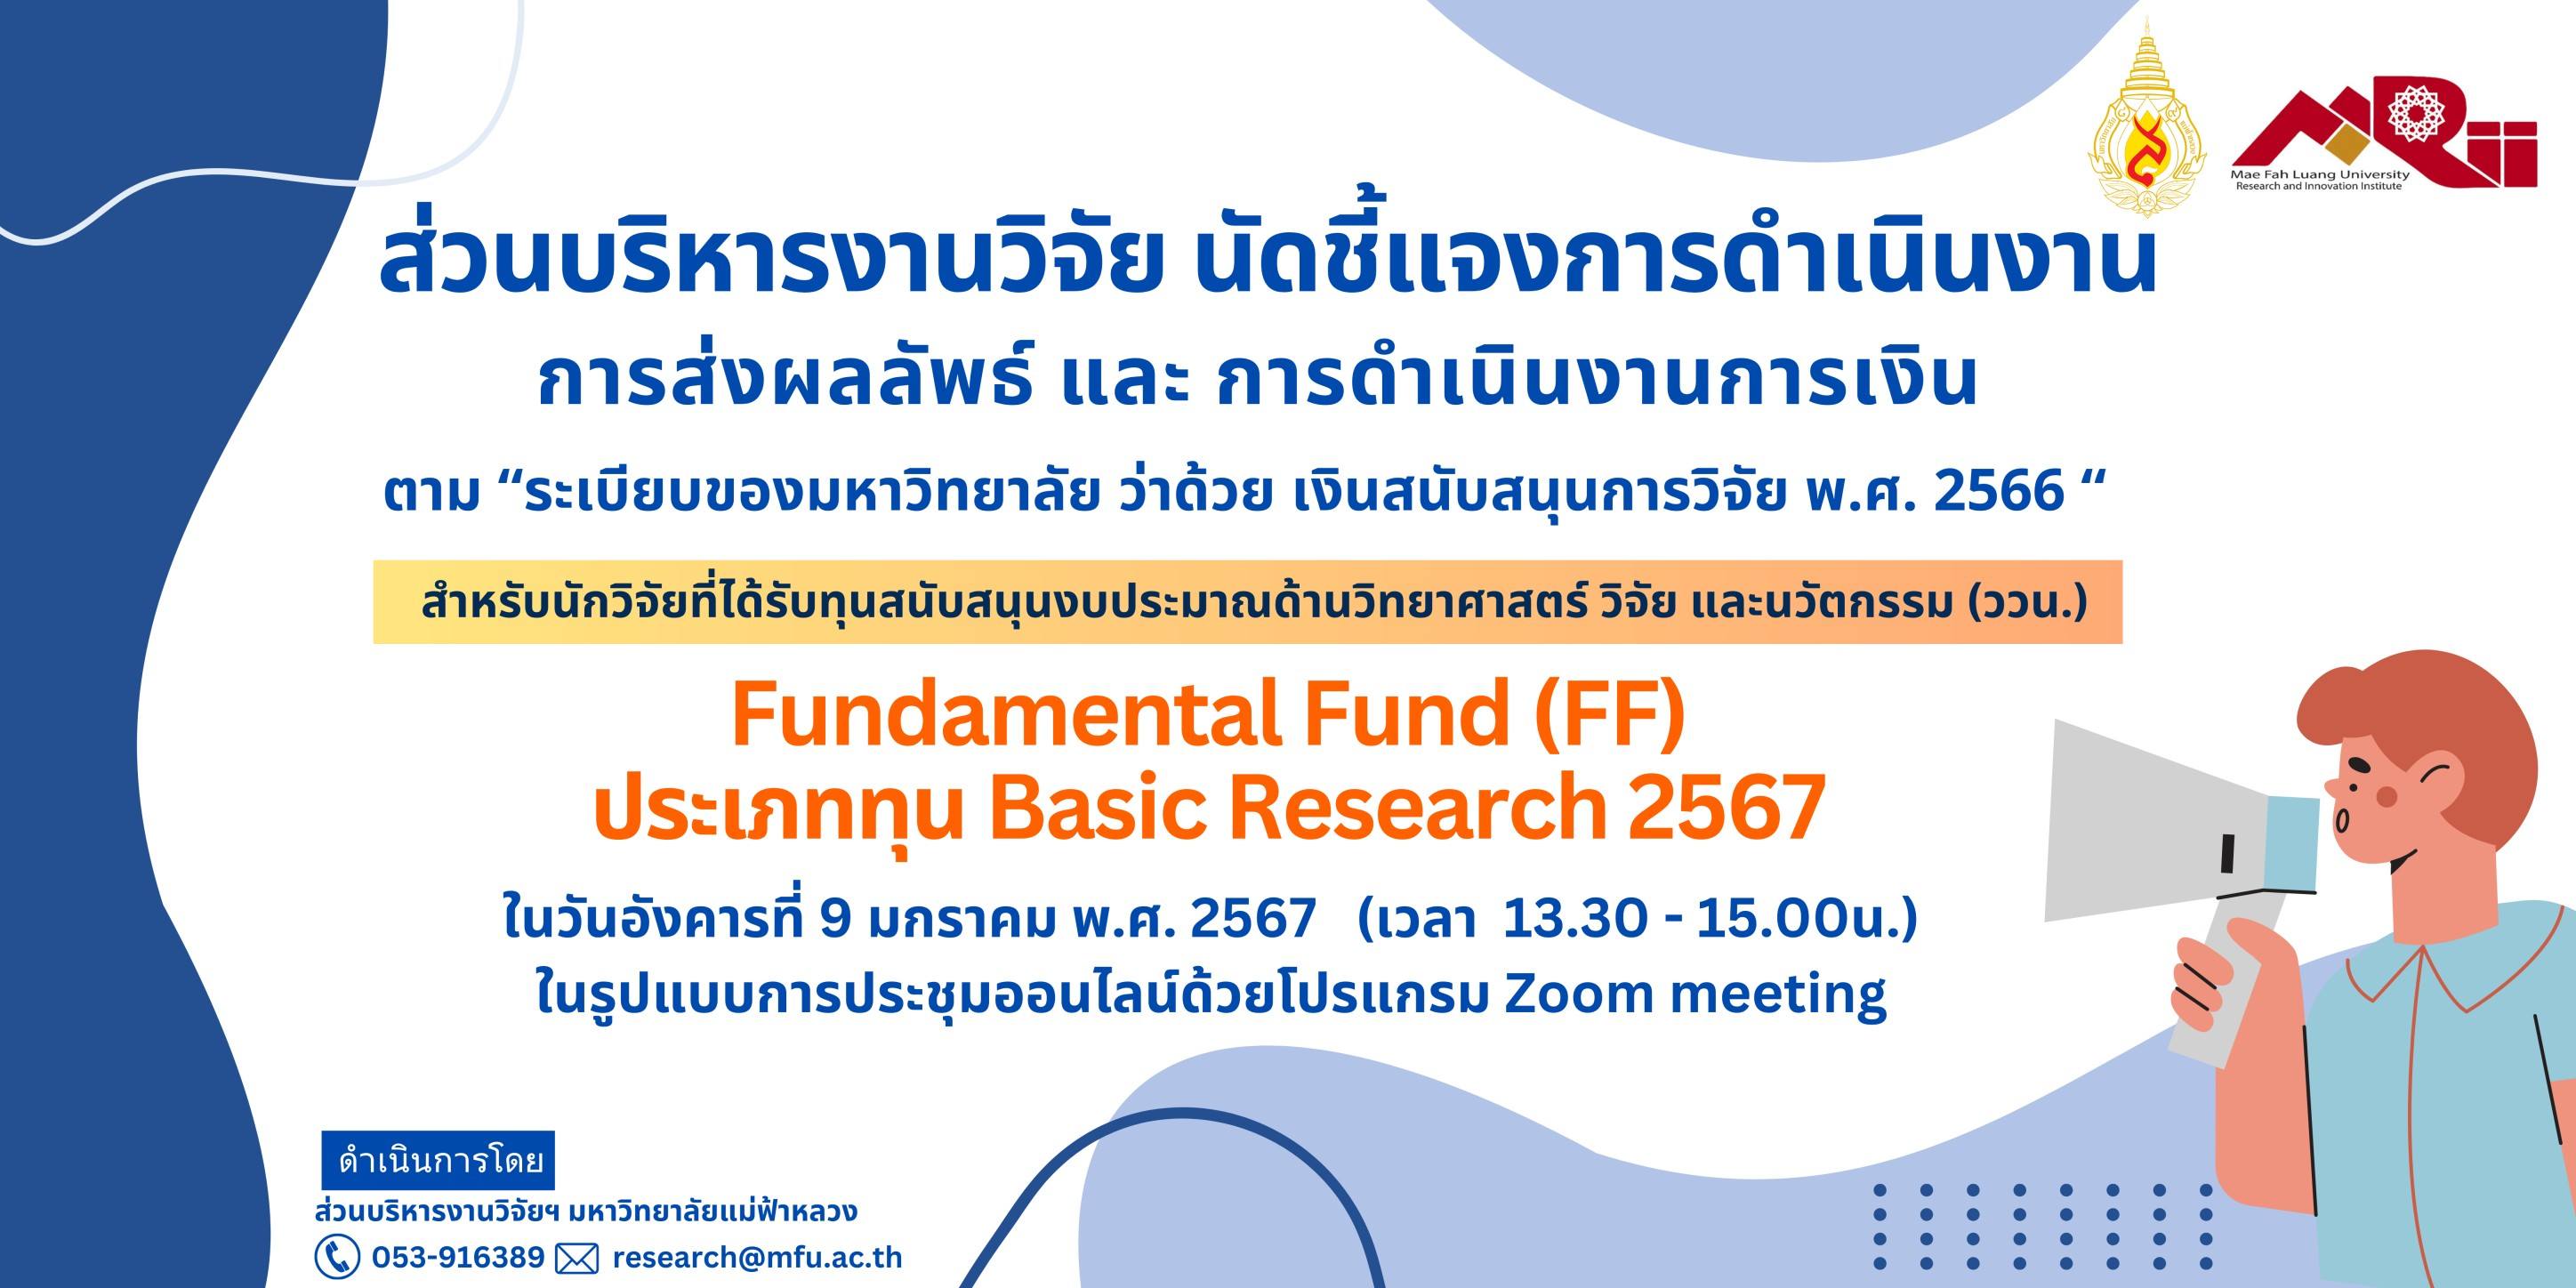 9 ม.ค. 2567 ส่วนบริหารงานวิจัยฯ ขอเชิญหัวหน้าโครงการและคณะผู้วิจัย ที่ได้รับทุนสนับสนุน Fundamental Fund  (FF) ประเภท Basic Research 2567 เข้าฟังการชี้แจงการดำเนินการงาน